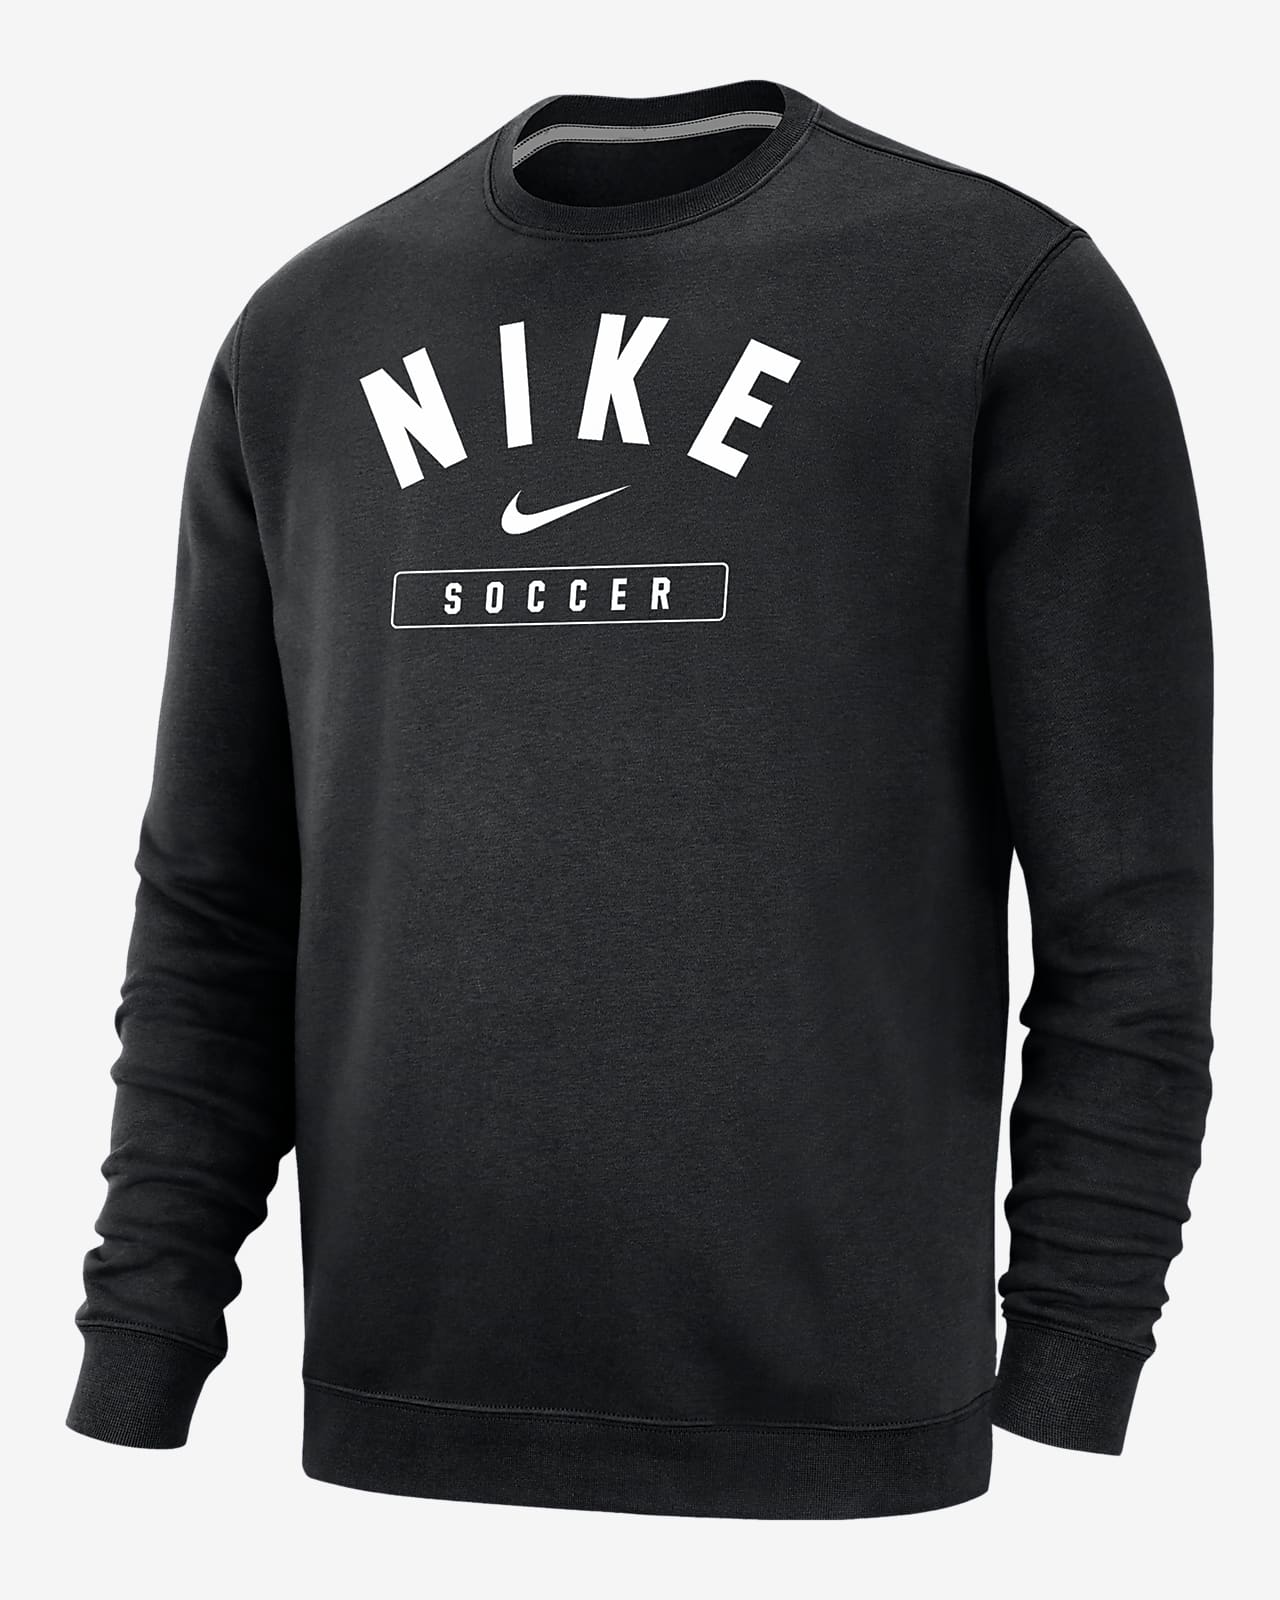 Nike Soccer Men's Crew-Neck Sweatshirt